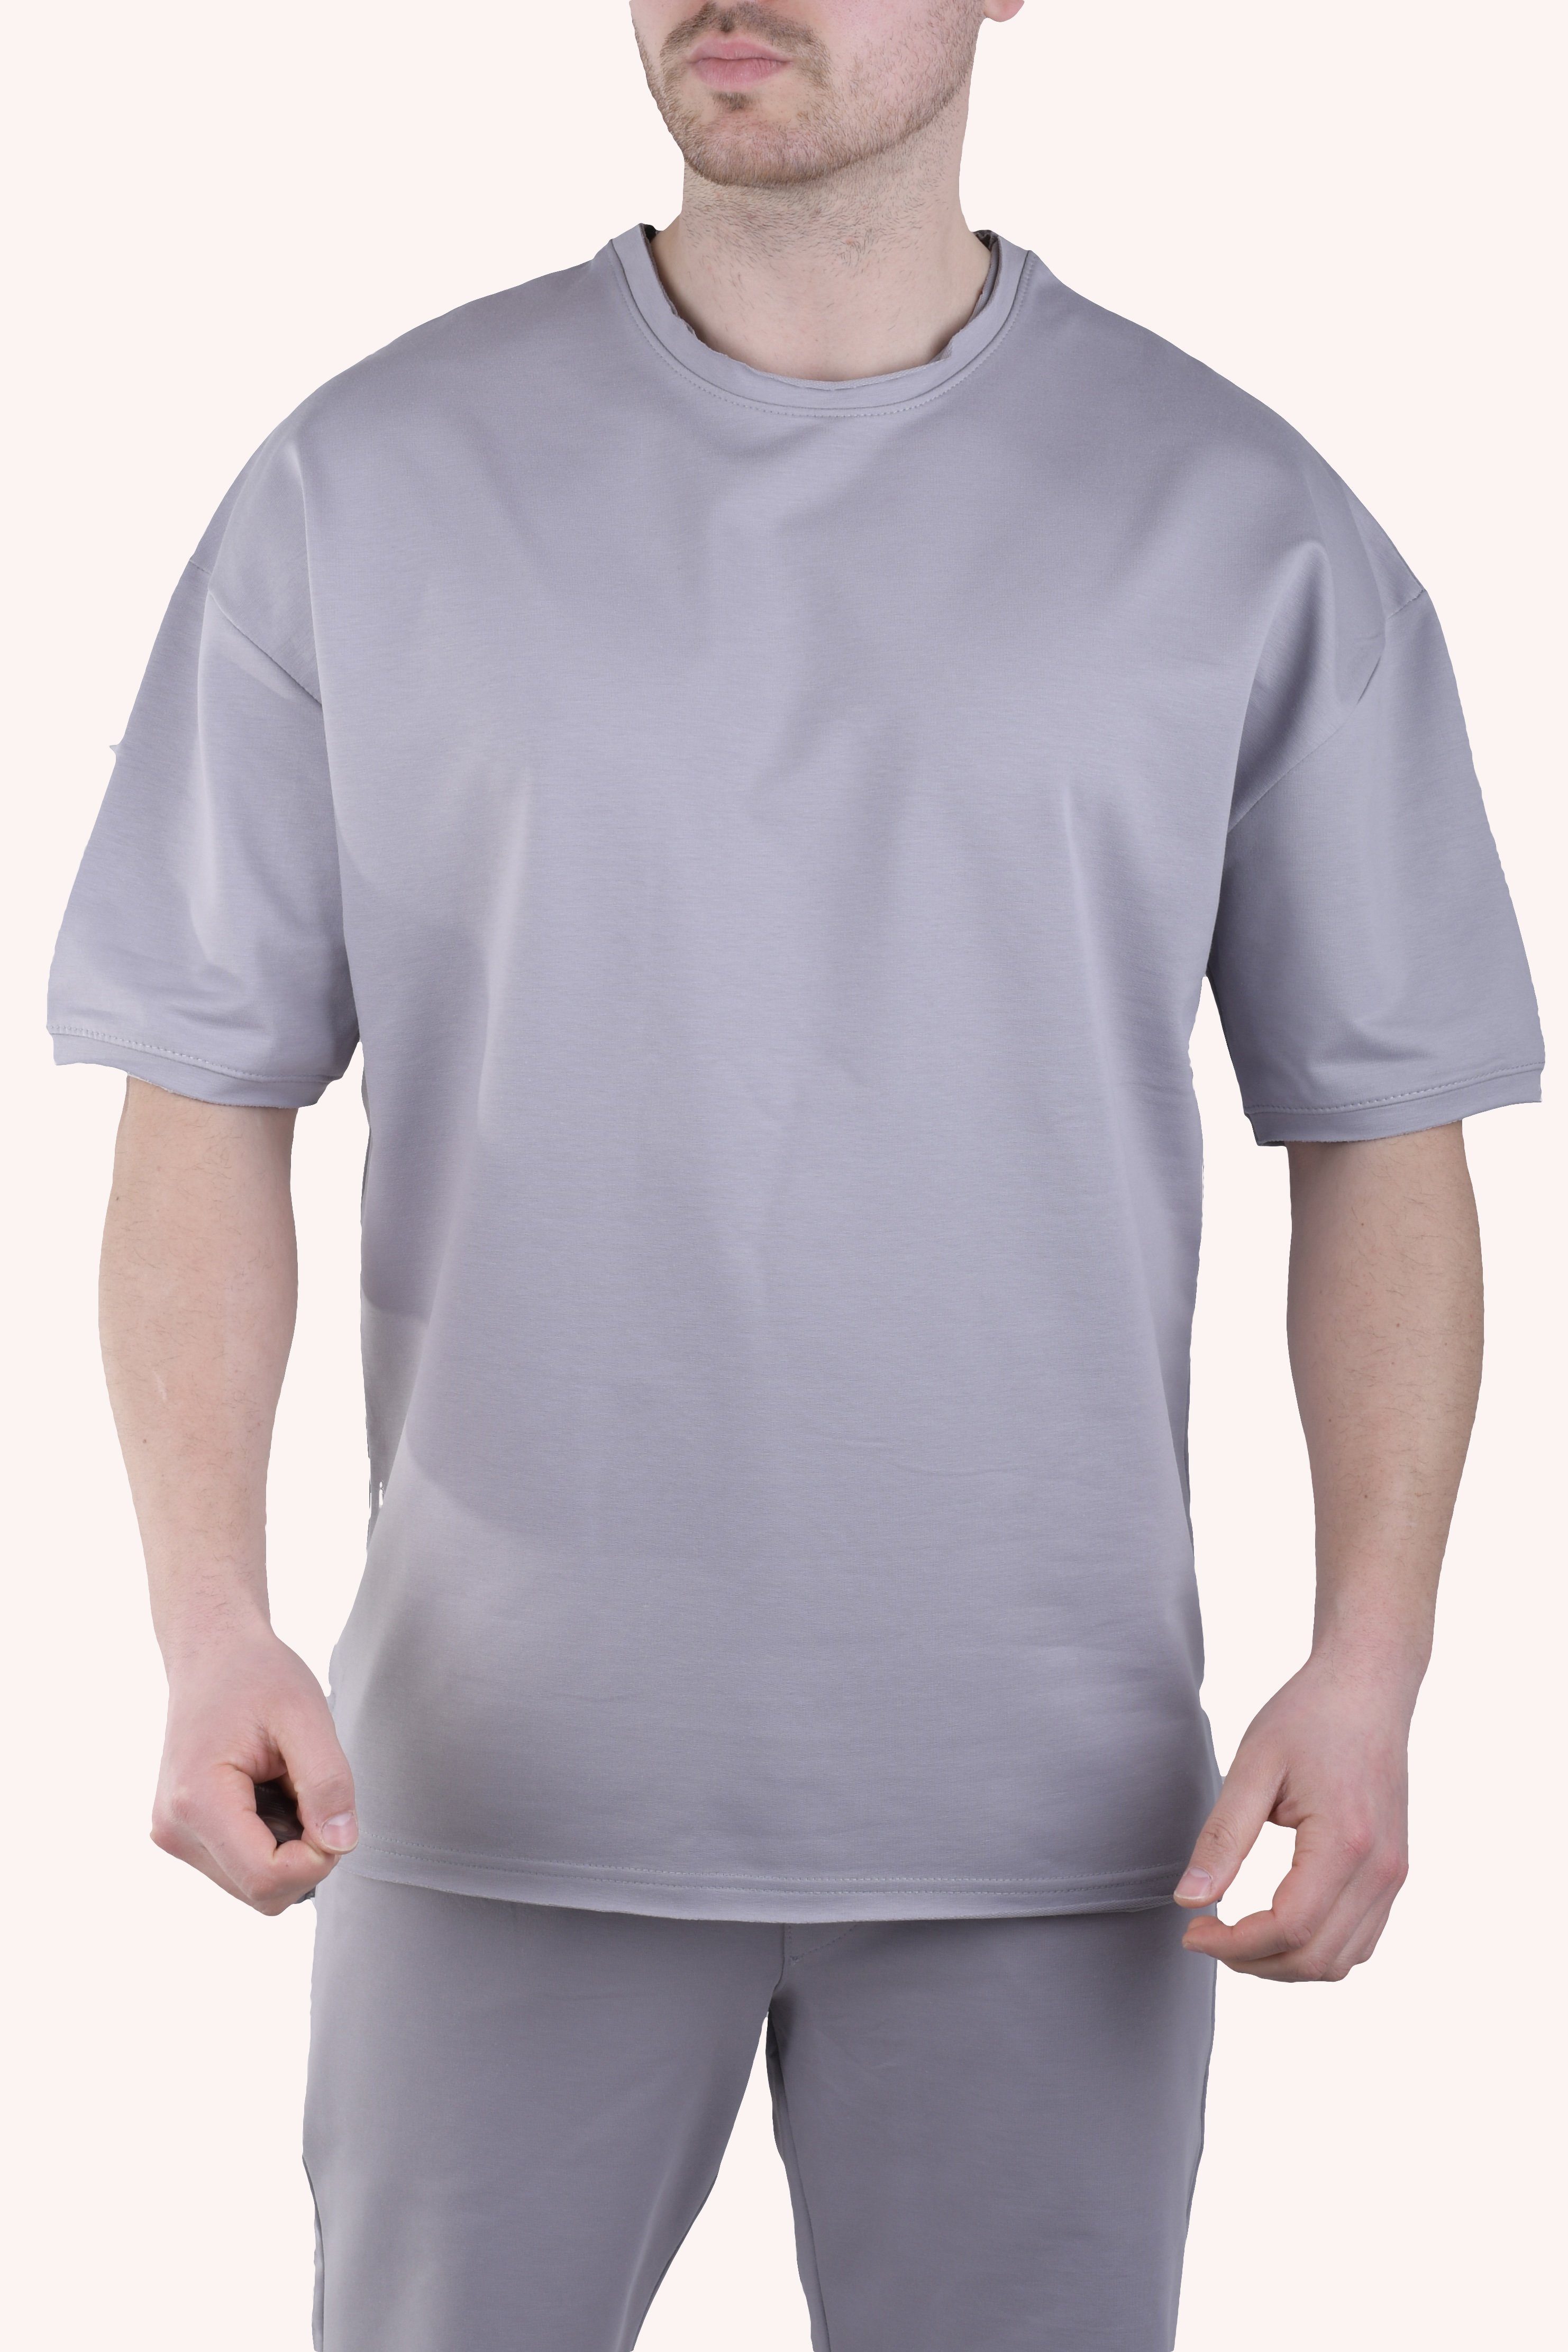 Megaman Jeans T-Shirt Herren T-Shirt M Shirt Oversize Weiß Megaman TS5011 Sommer Grau